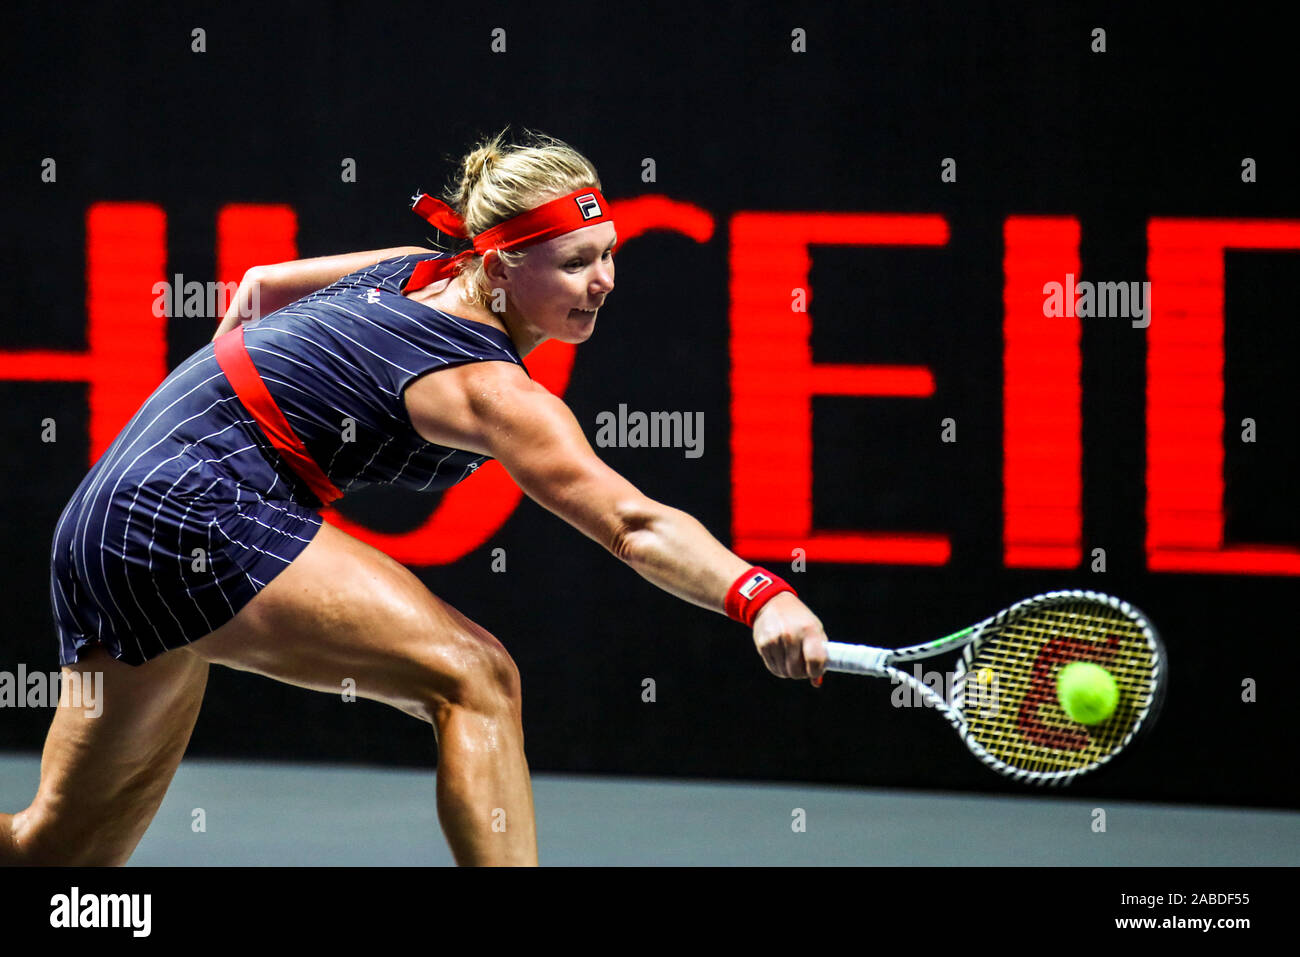 Niederländisch professional tennis player Kiki Bertens konkurriert gegen australische Professional tennis player Ashleigh Barty während einer Gruppe der WTA-Finale Stockfoto